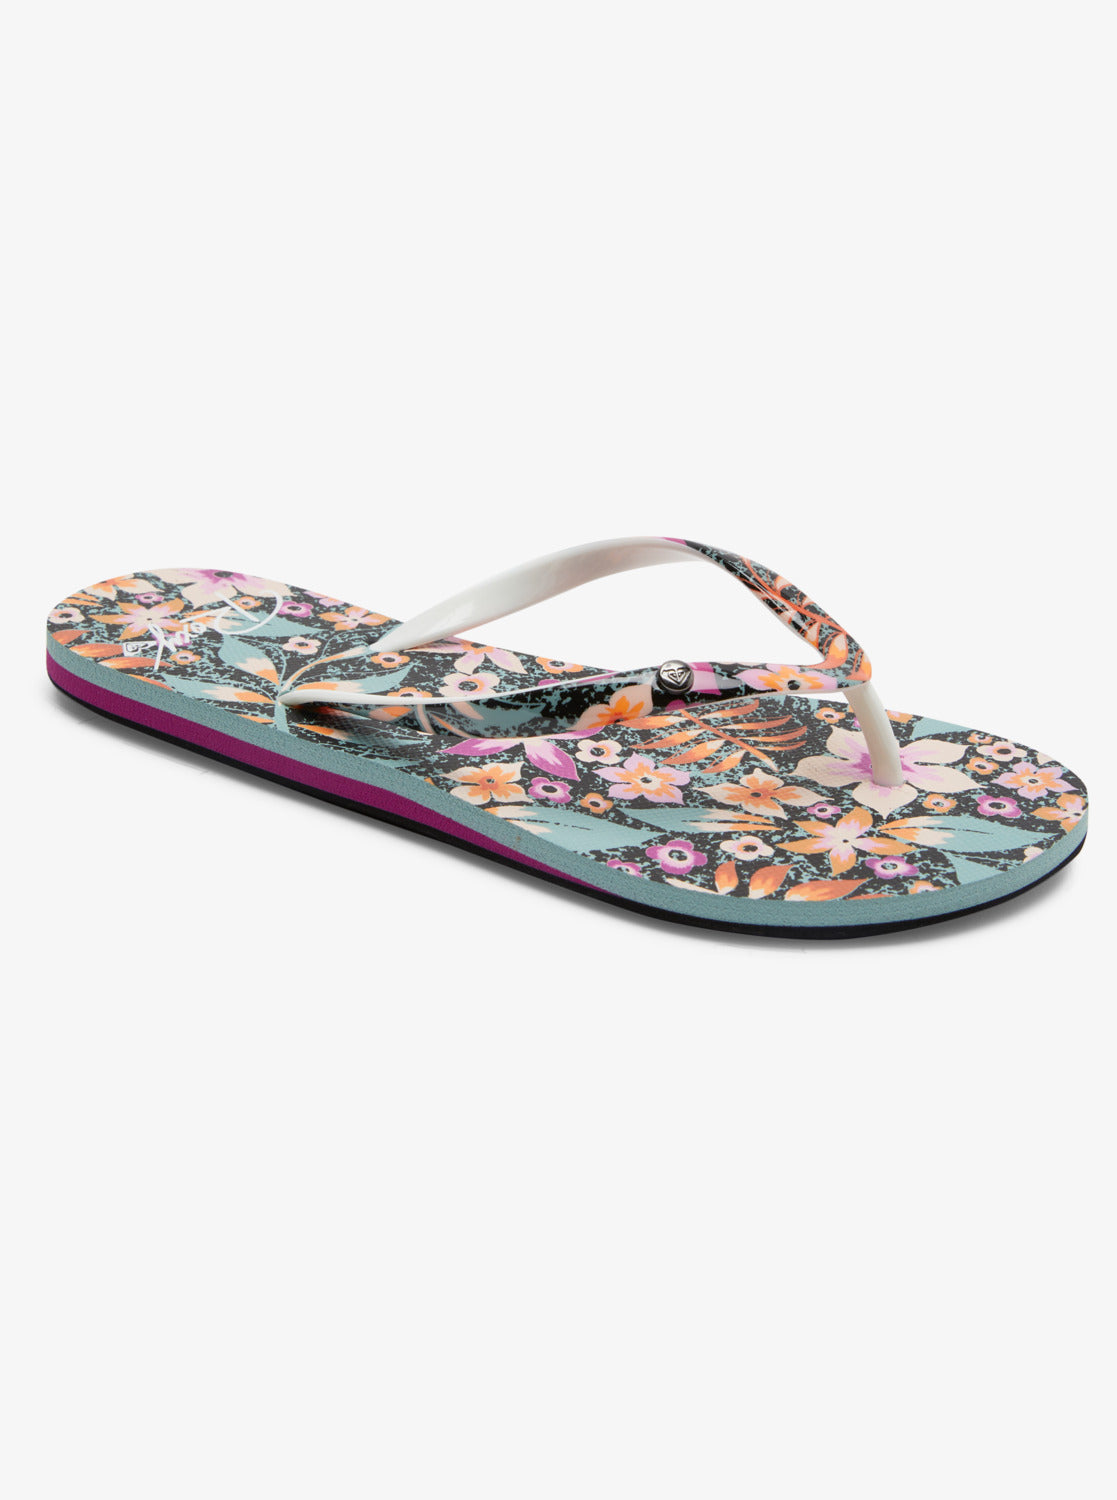 ROXY Women's Portofino III Flip Flops > Footwear > Beach Apparel